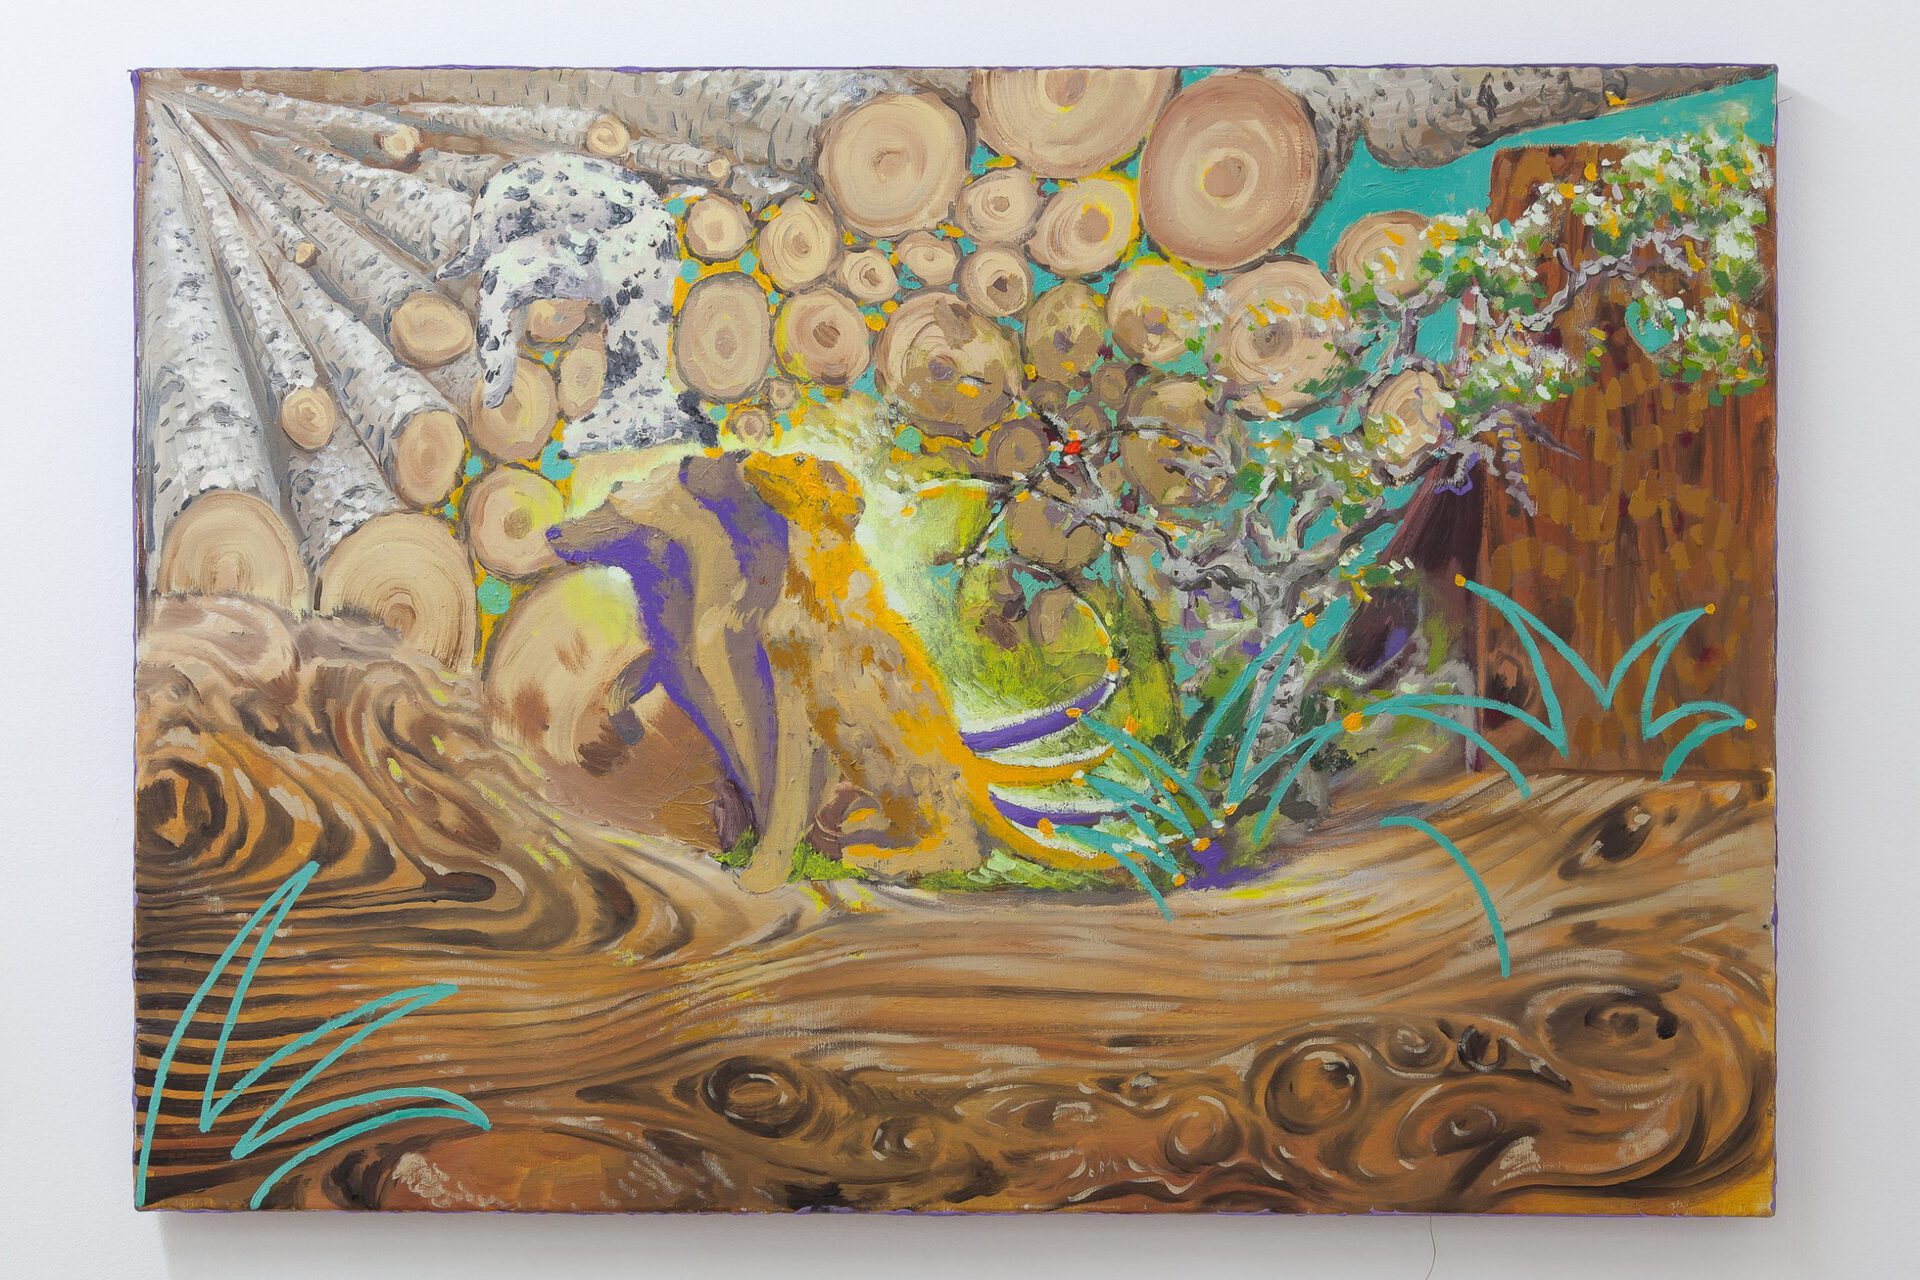 Chronicles of Dogwood, 70 x 100 cm, oil on canvas, 2021